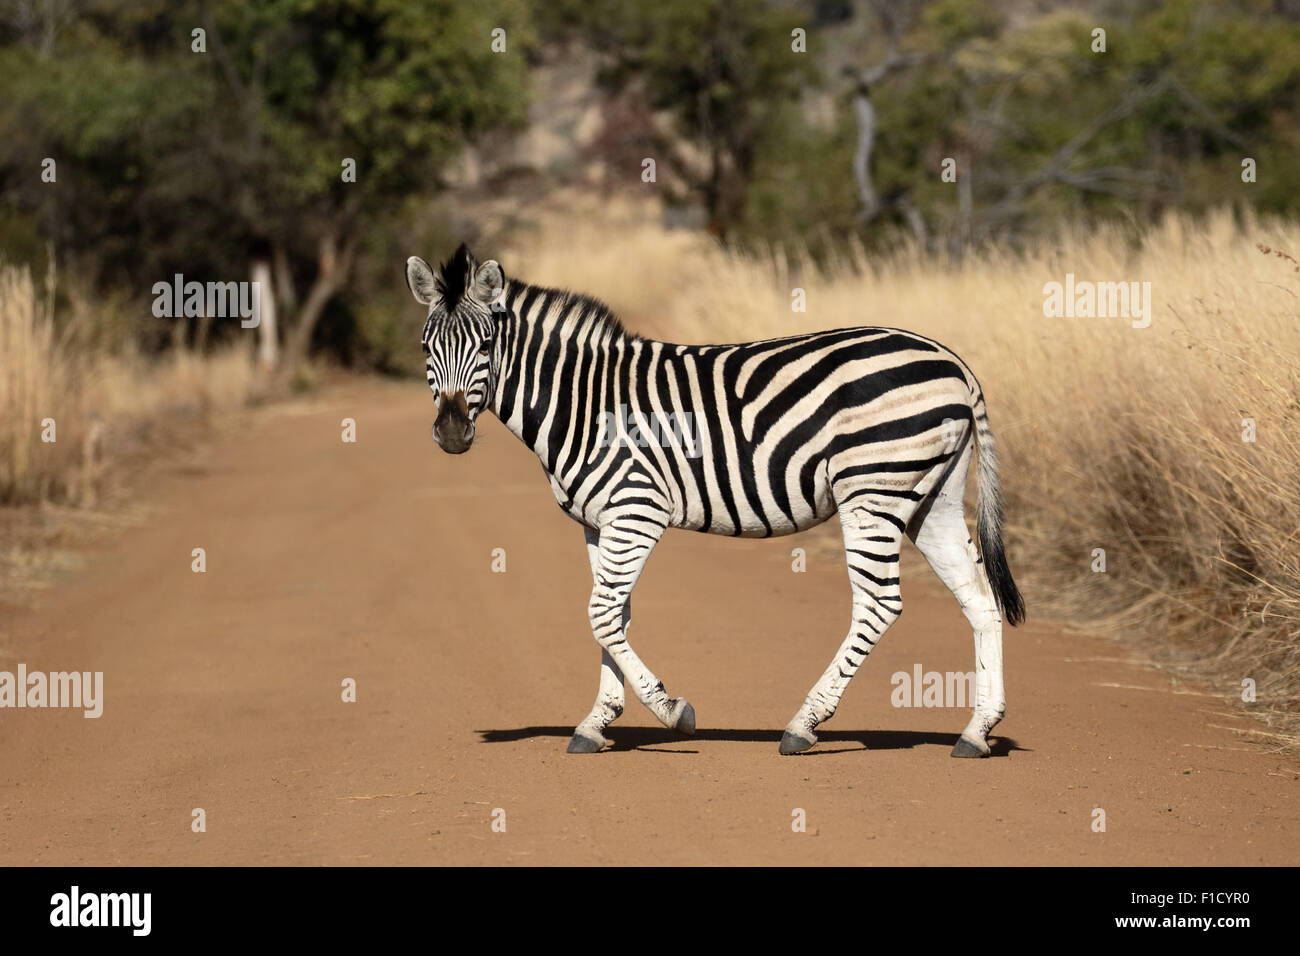 Ou des plaines, Equus quagga zebra Burchell, seul mammifère, Afrique du Sud, août 2015 Banque D'Images